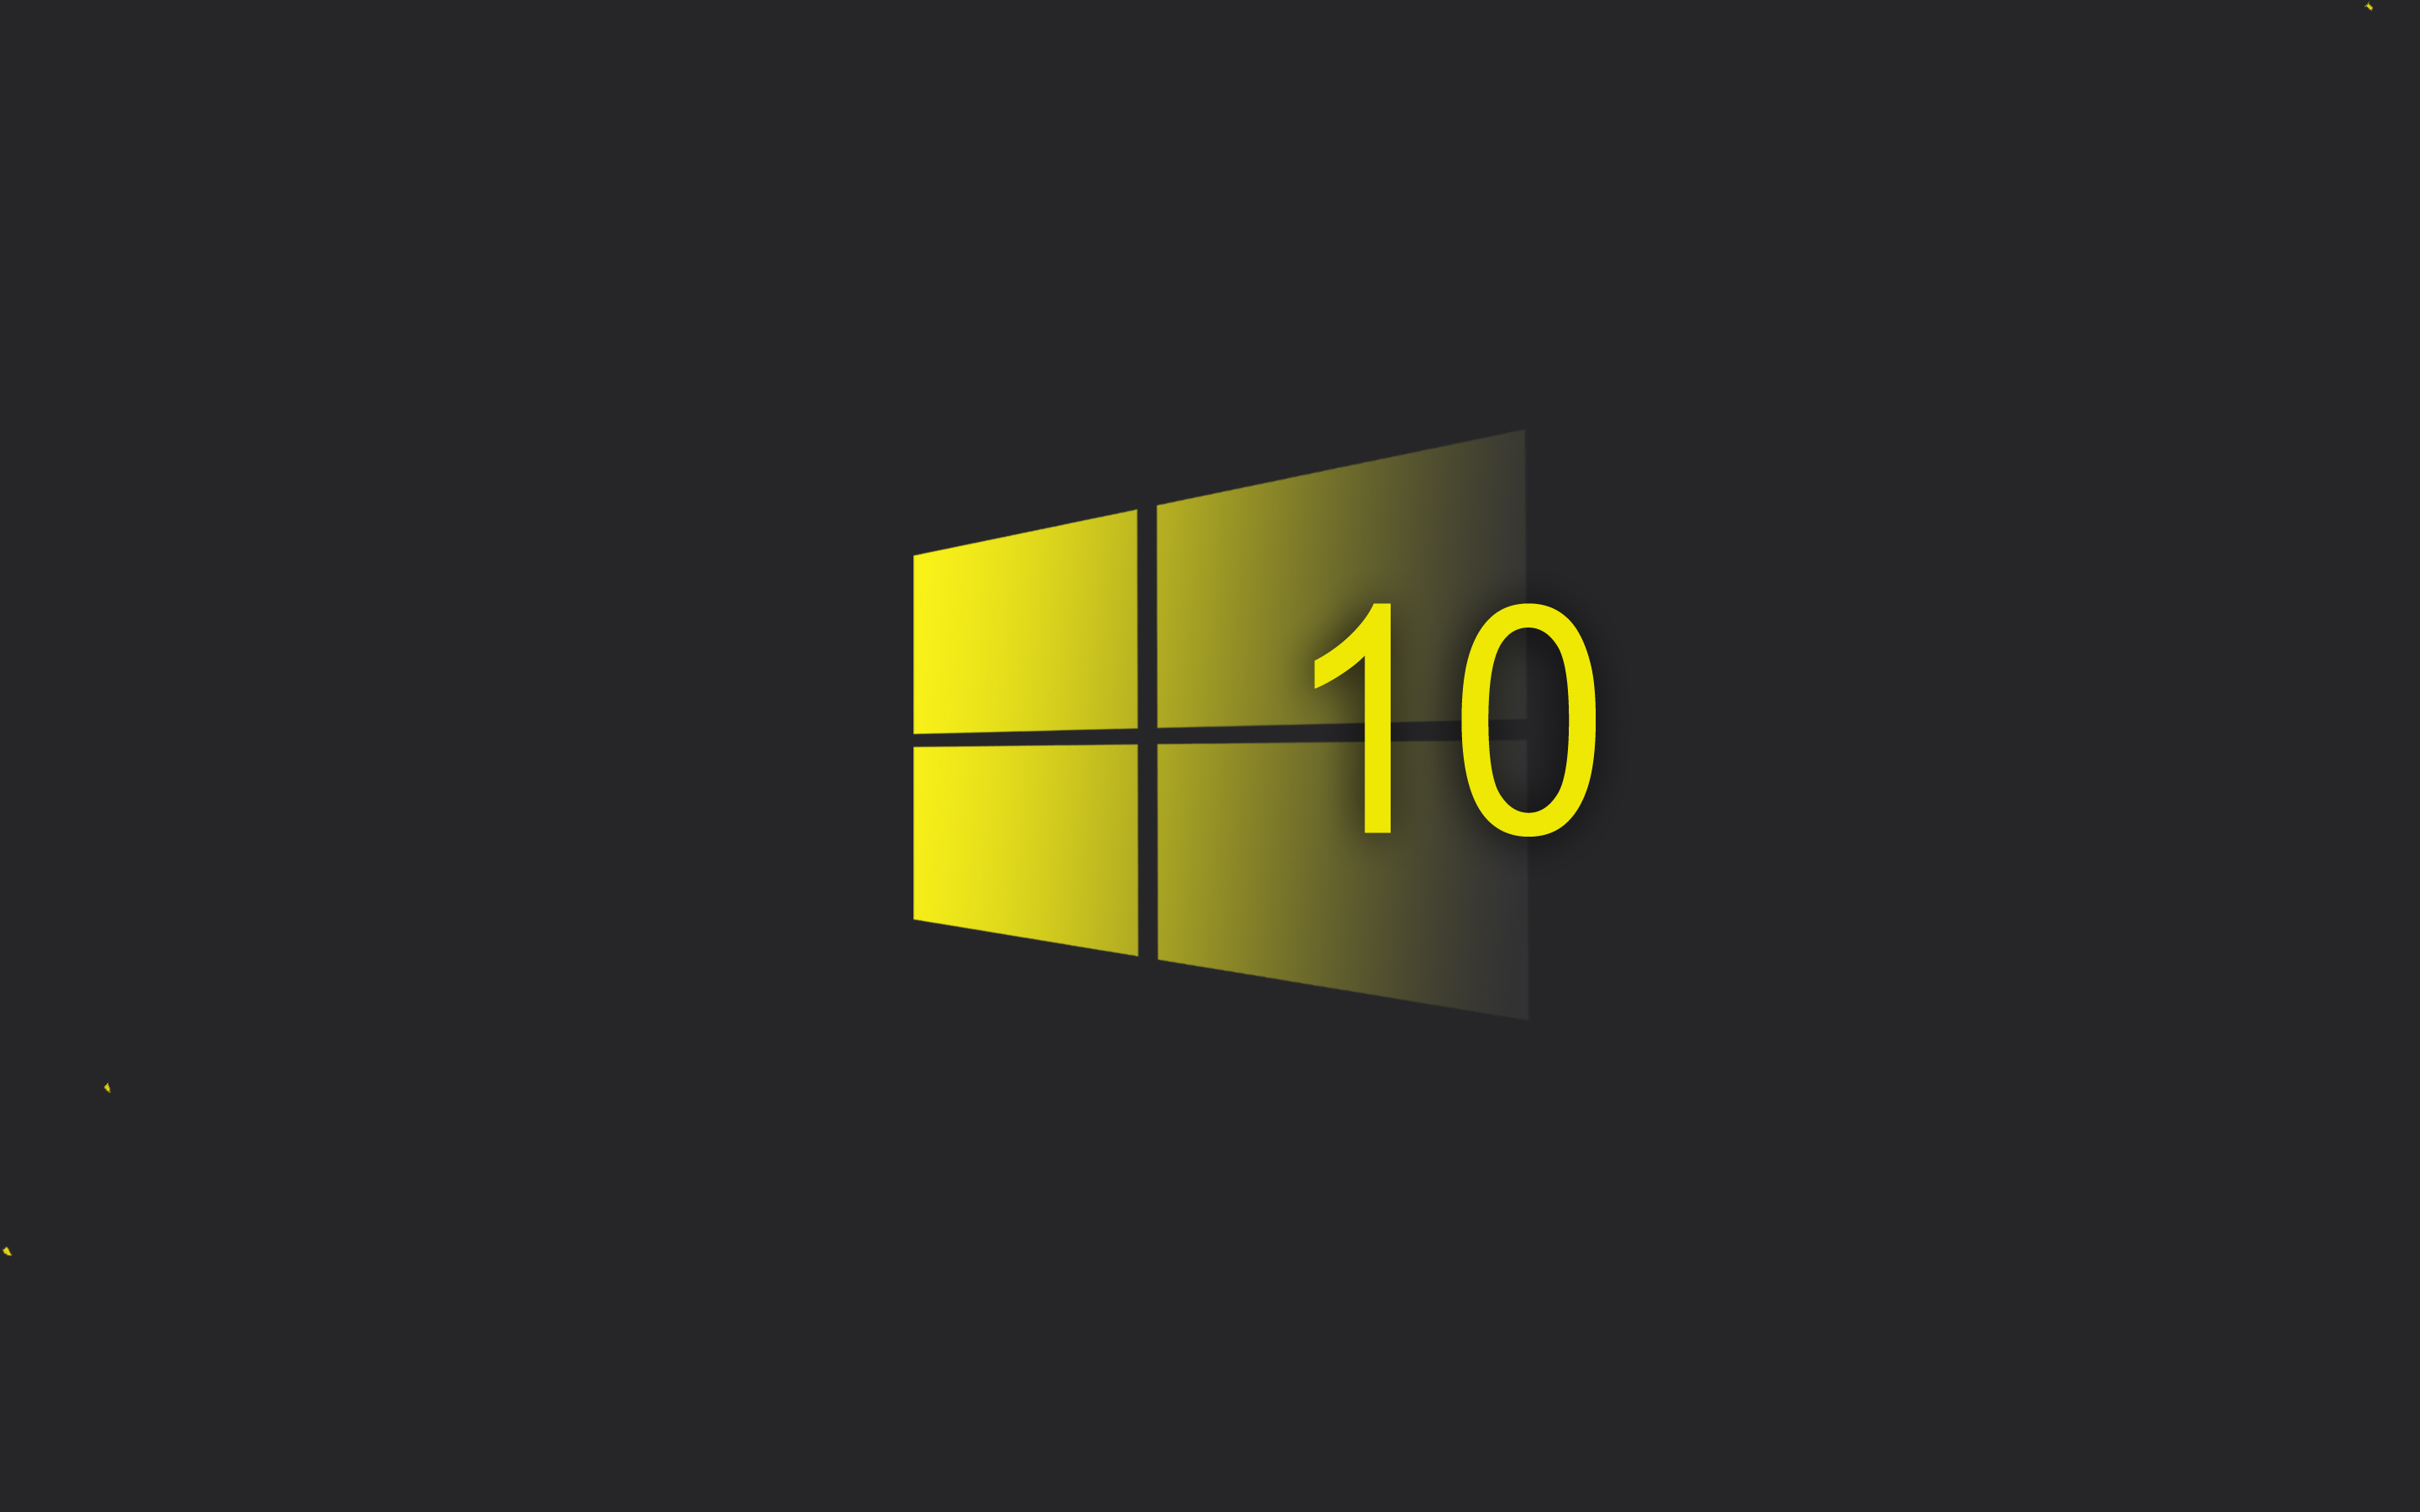 Windows 10 đã trở nên hoàn hảo hơn với những tính năng độc đáo và thiết kế tinh tế hơn bao giờ hết. Khám phá ngay hình ảnh về hệ điều hành này và tìm hiểu thêm về tất cả các cập nhật mới nhất đang chờ đợi bạn.